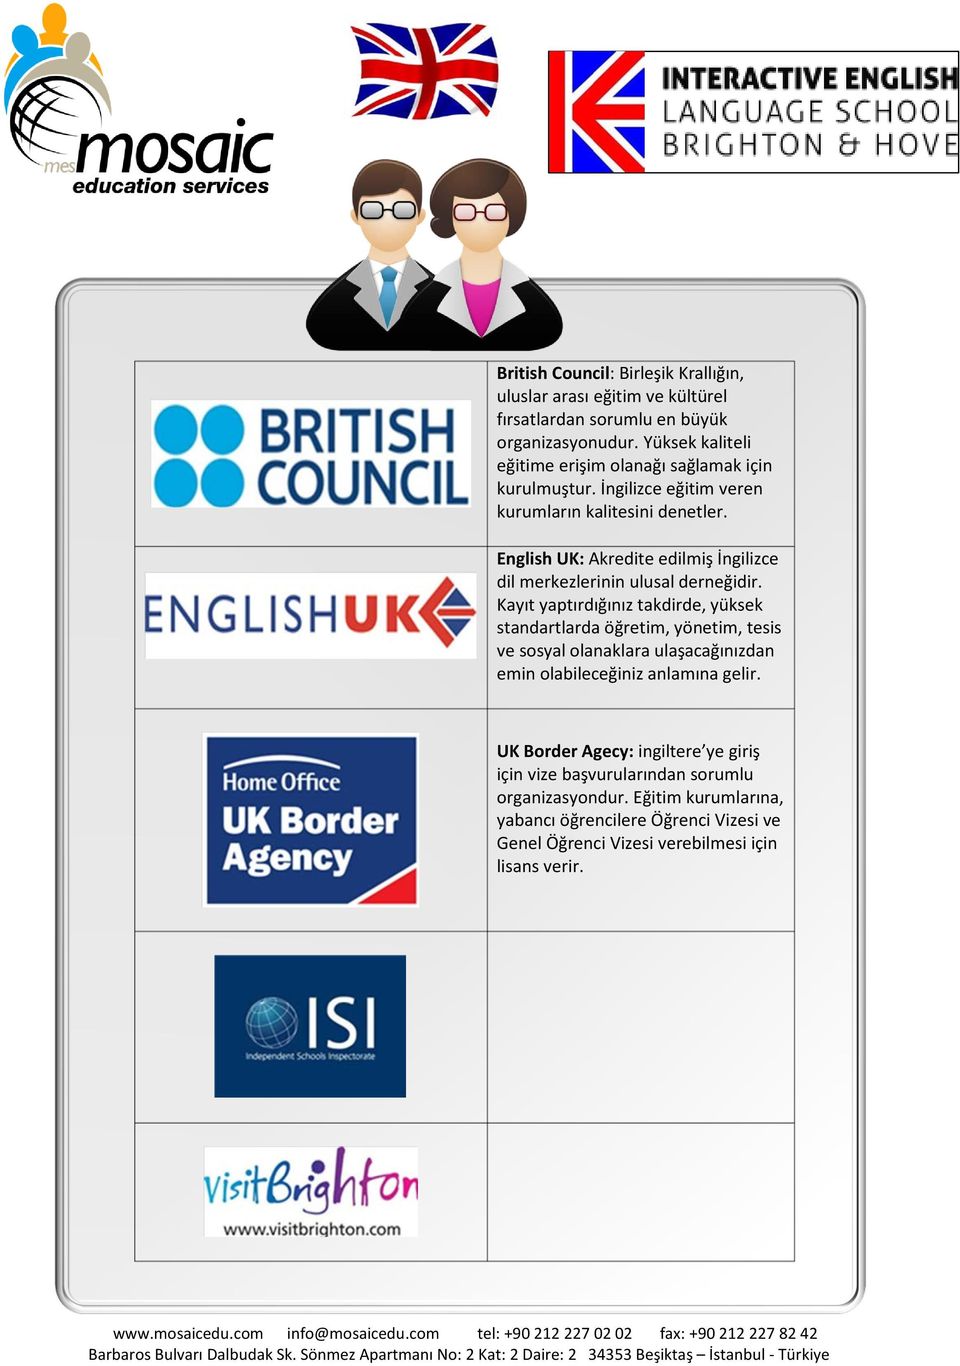 English UK: Akredite edilmiş İngilizce dil merkezlerinin ulusal derneğidir.